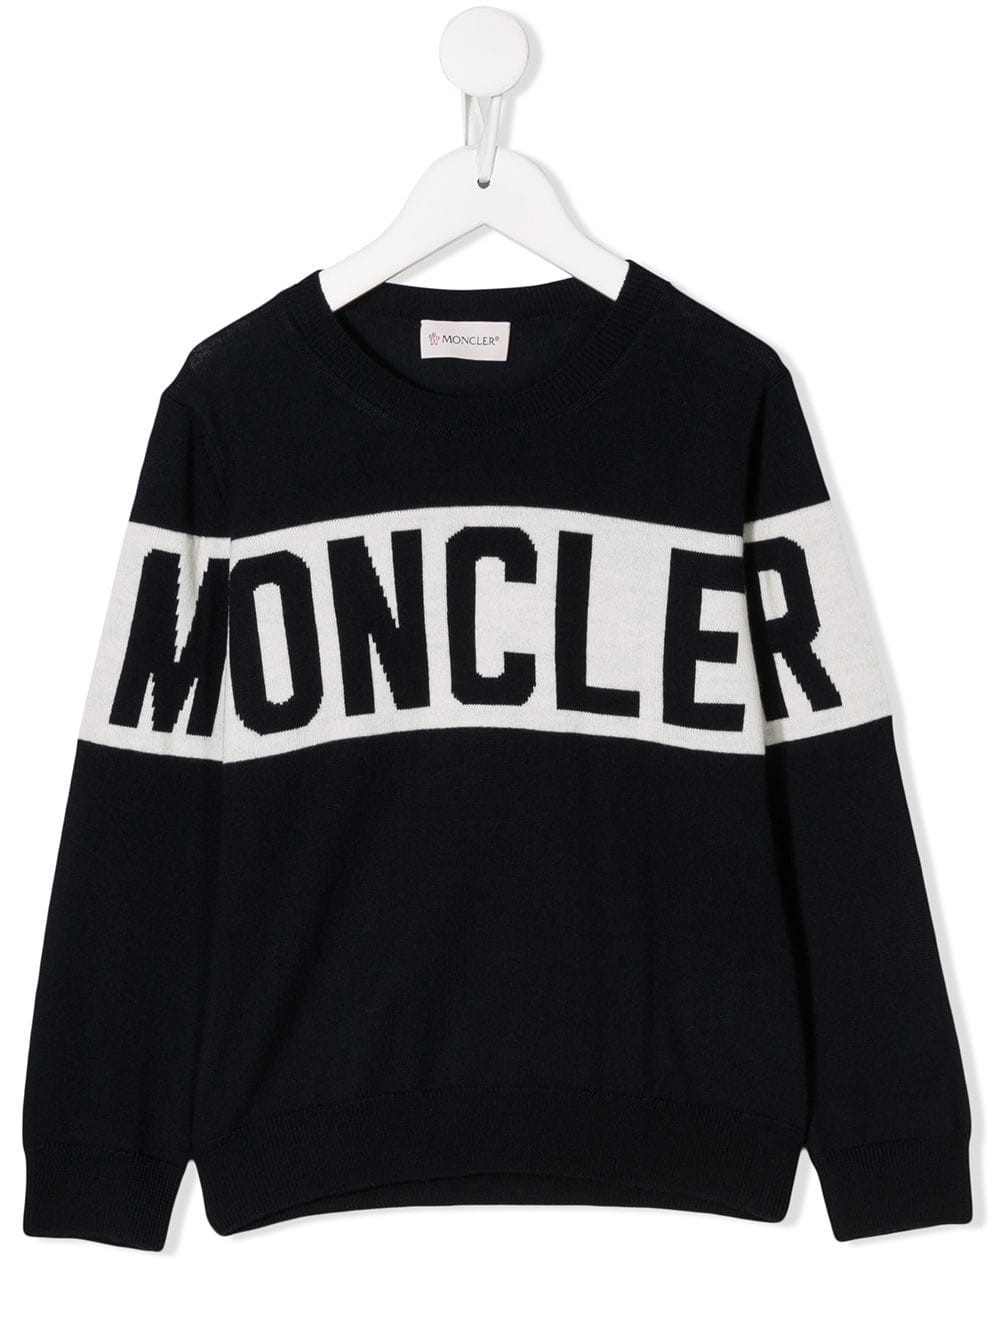 moncler sweater kids